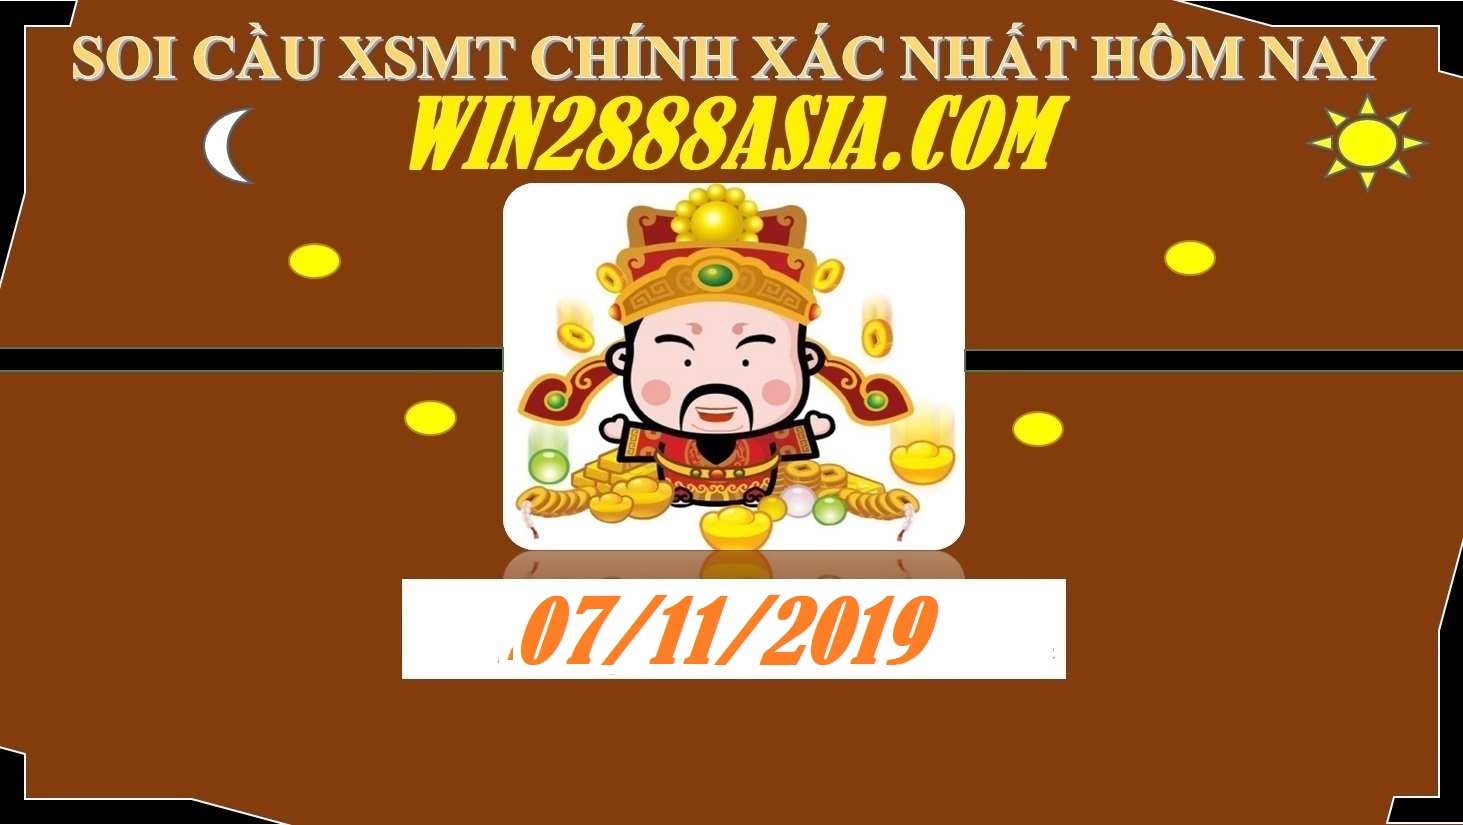 Soi cầu XSMT 7-11-2019 Win2888